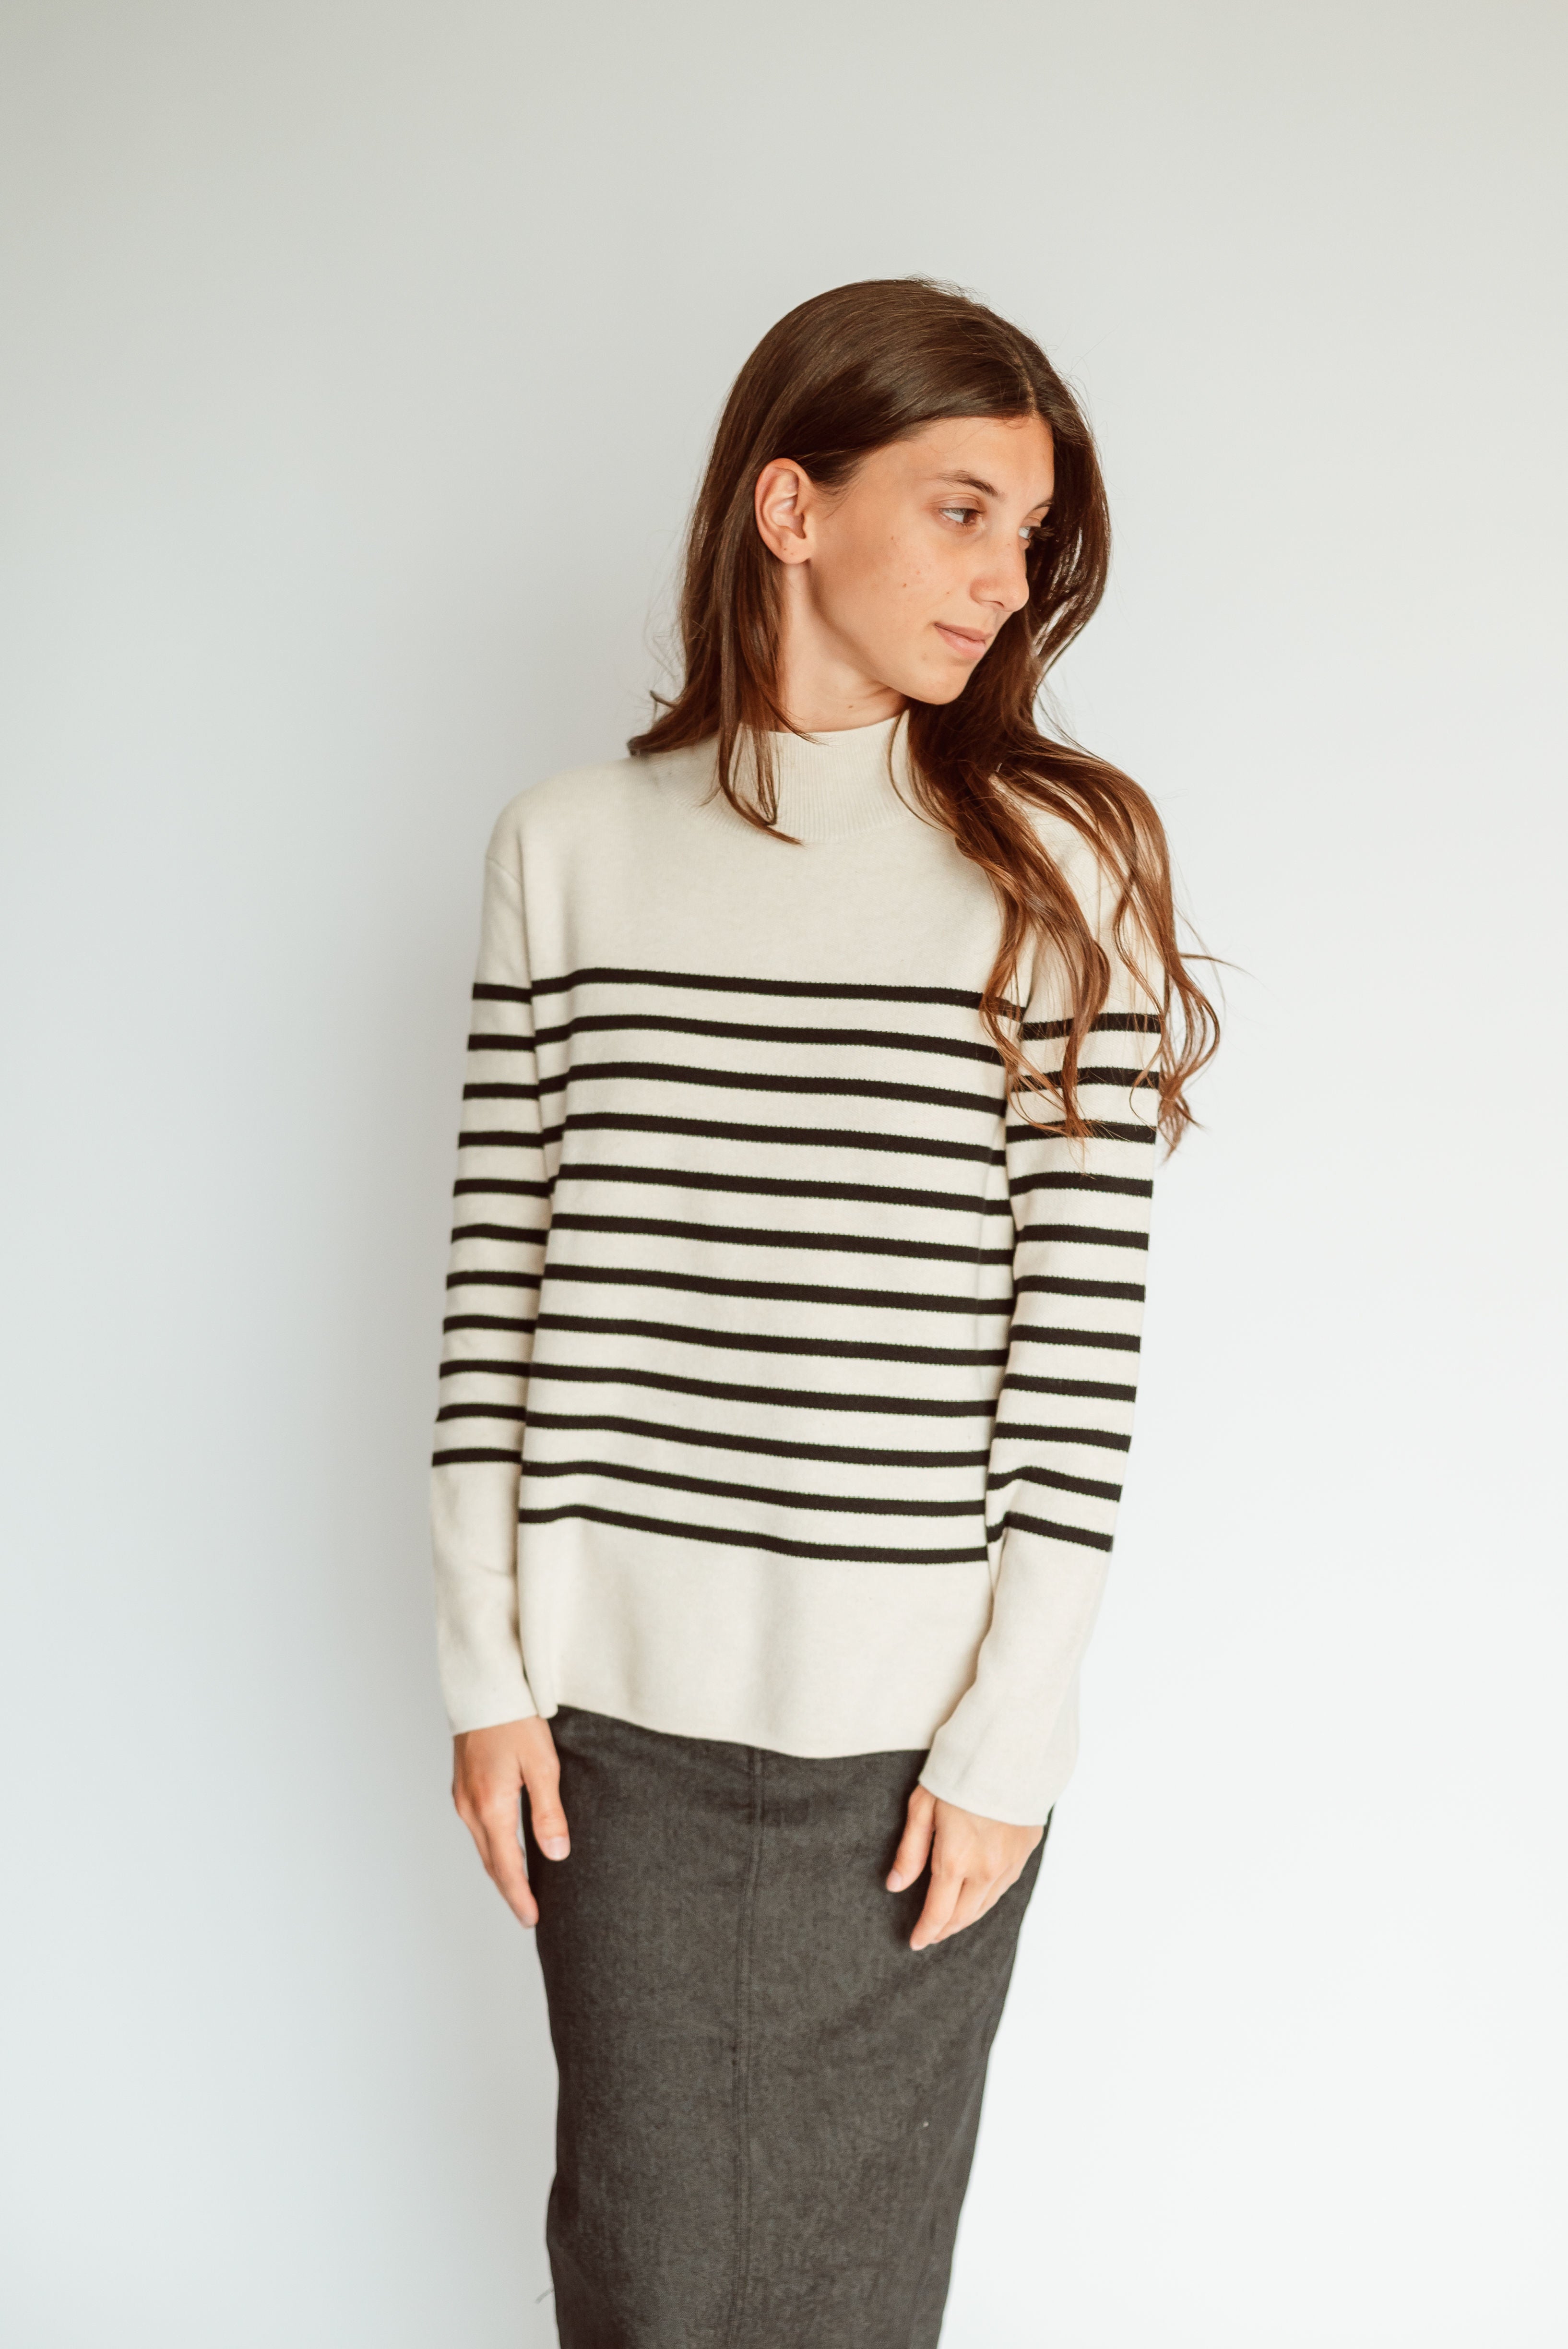 Jasmine Sweater in Oat/Black Stripes - FINAL SALE